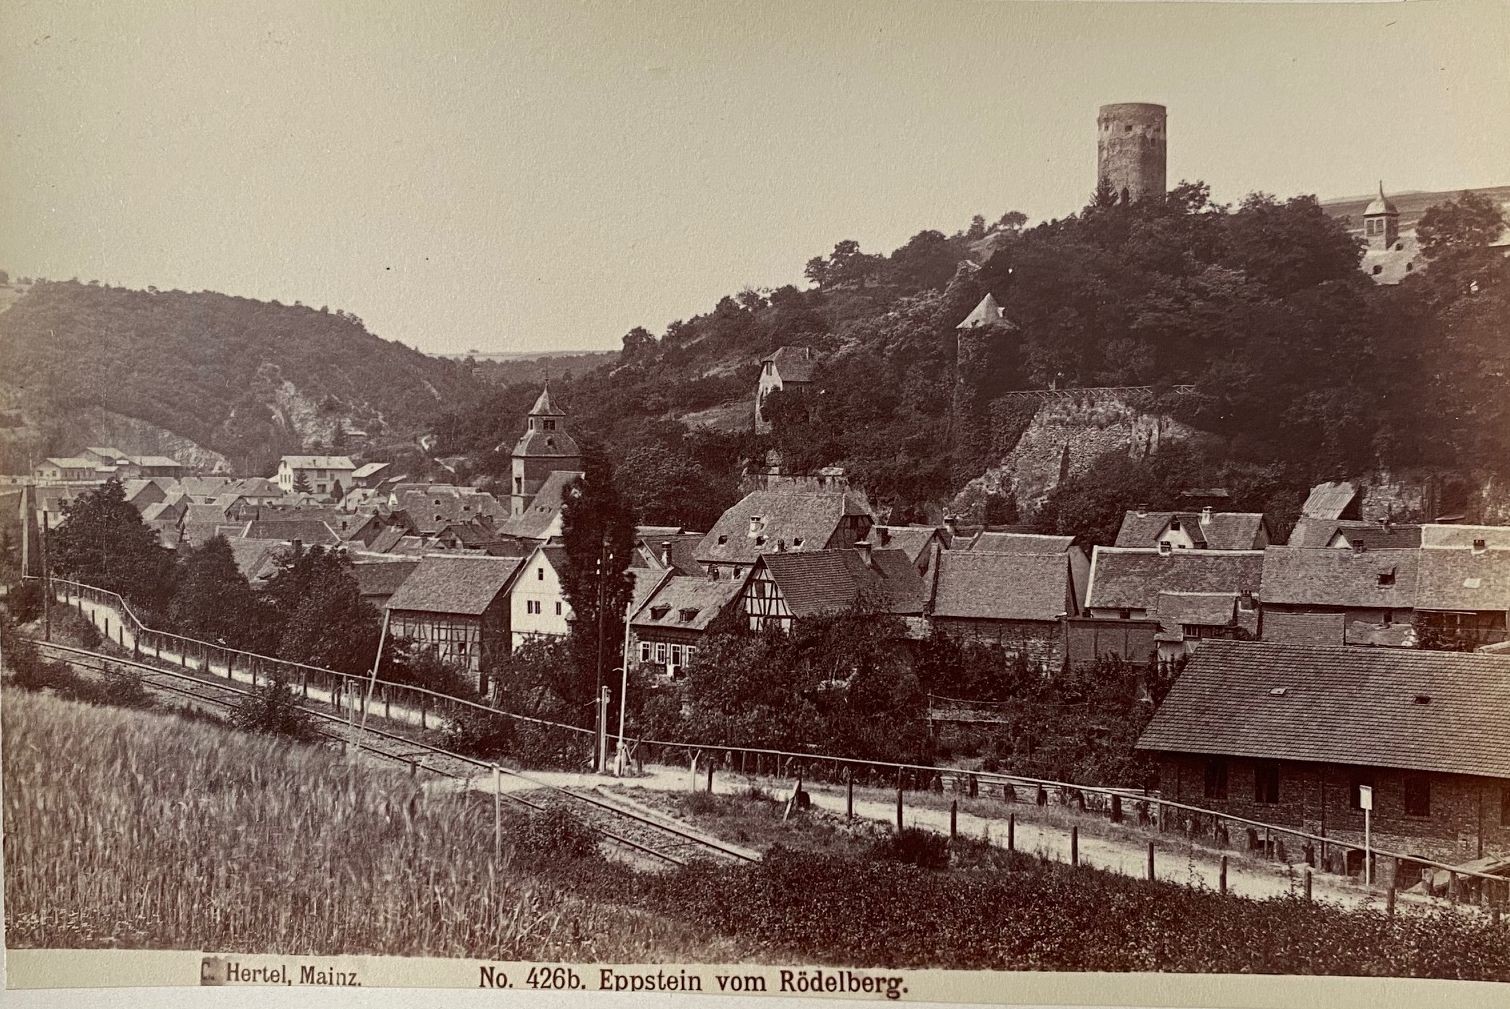 Fotografie, Carl Hertel No. 426b, Eppstein vom Rödelberg, ca. 1885 (Taunus-Rhein-Main - Regionalgeschichtliche Sammlung Dr. Stefan Naas CC BY-NC-SA)